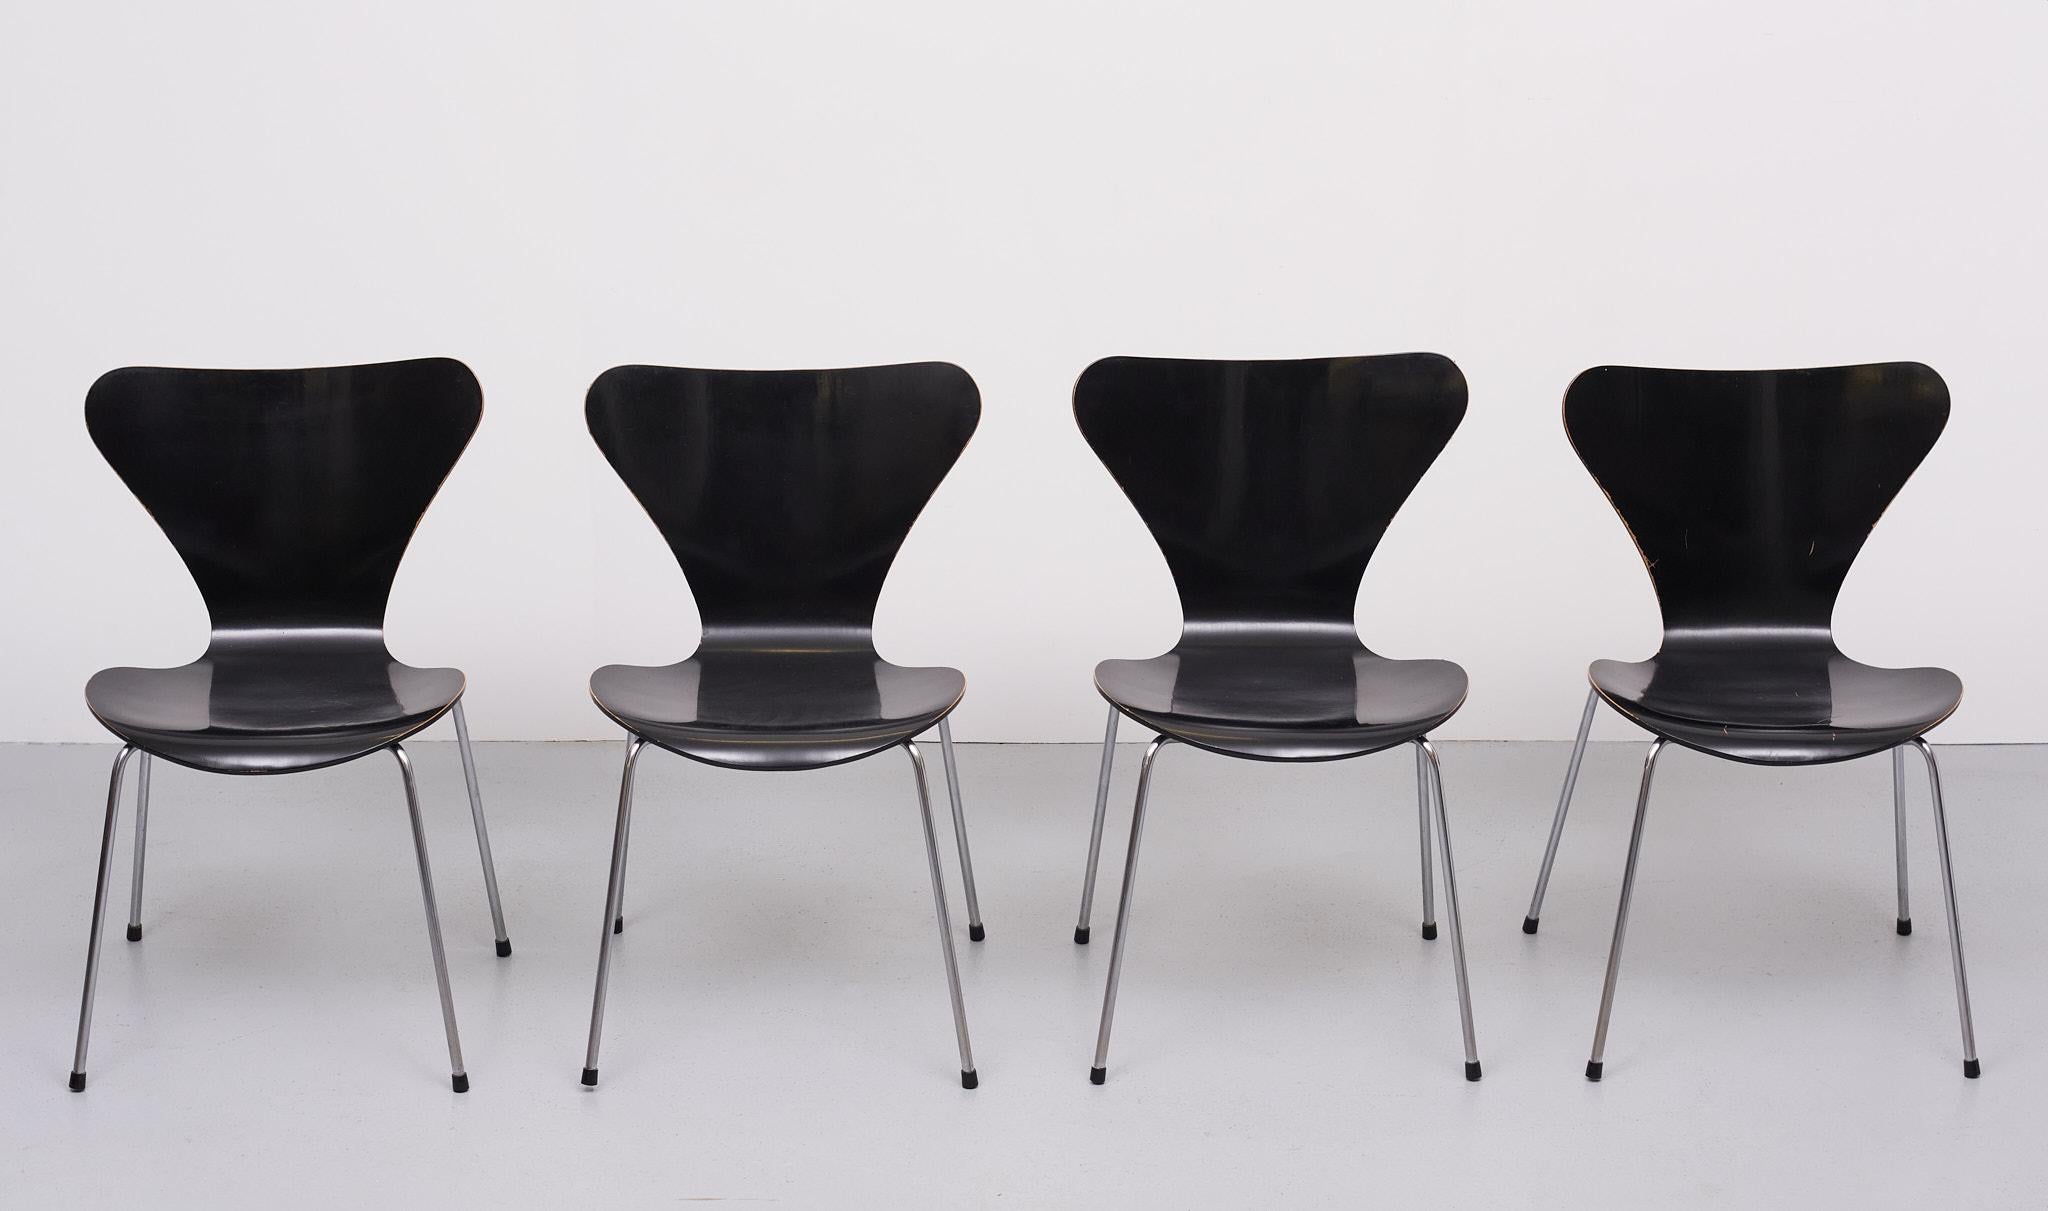 Magnifique ensemble de chaises papillon noir mat (Butterfly Chairs) ou Série 7 / 3107 par Arne Jacobsen pour Fritz Hansen. L'ensemble est dans un état vintage très soigné. 
Avec juste ce qu'il faut de patine.